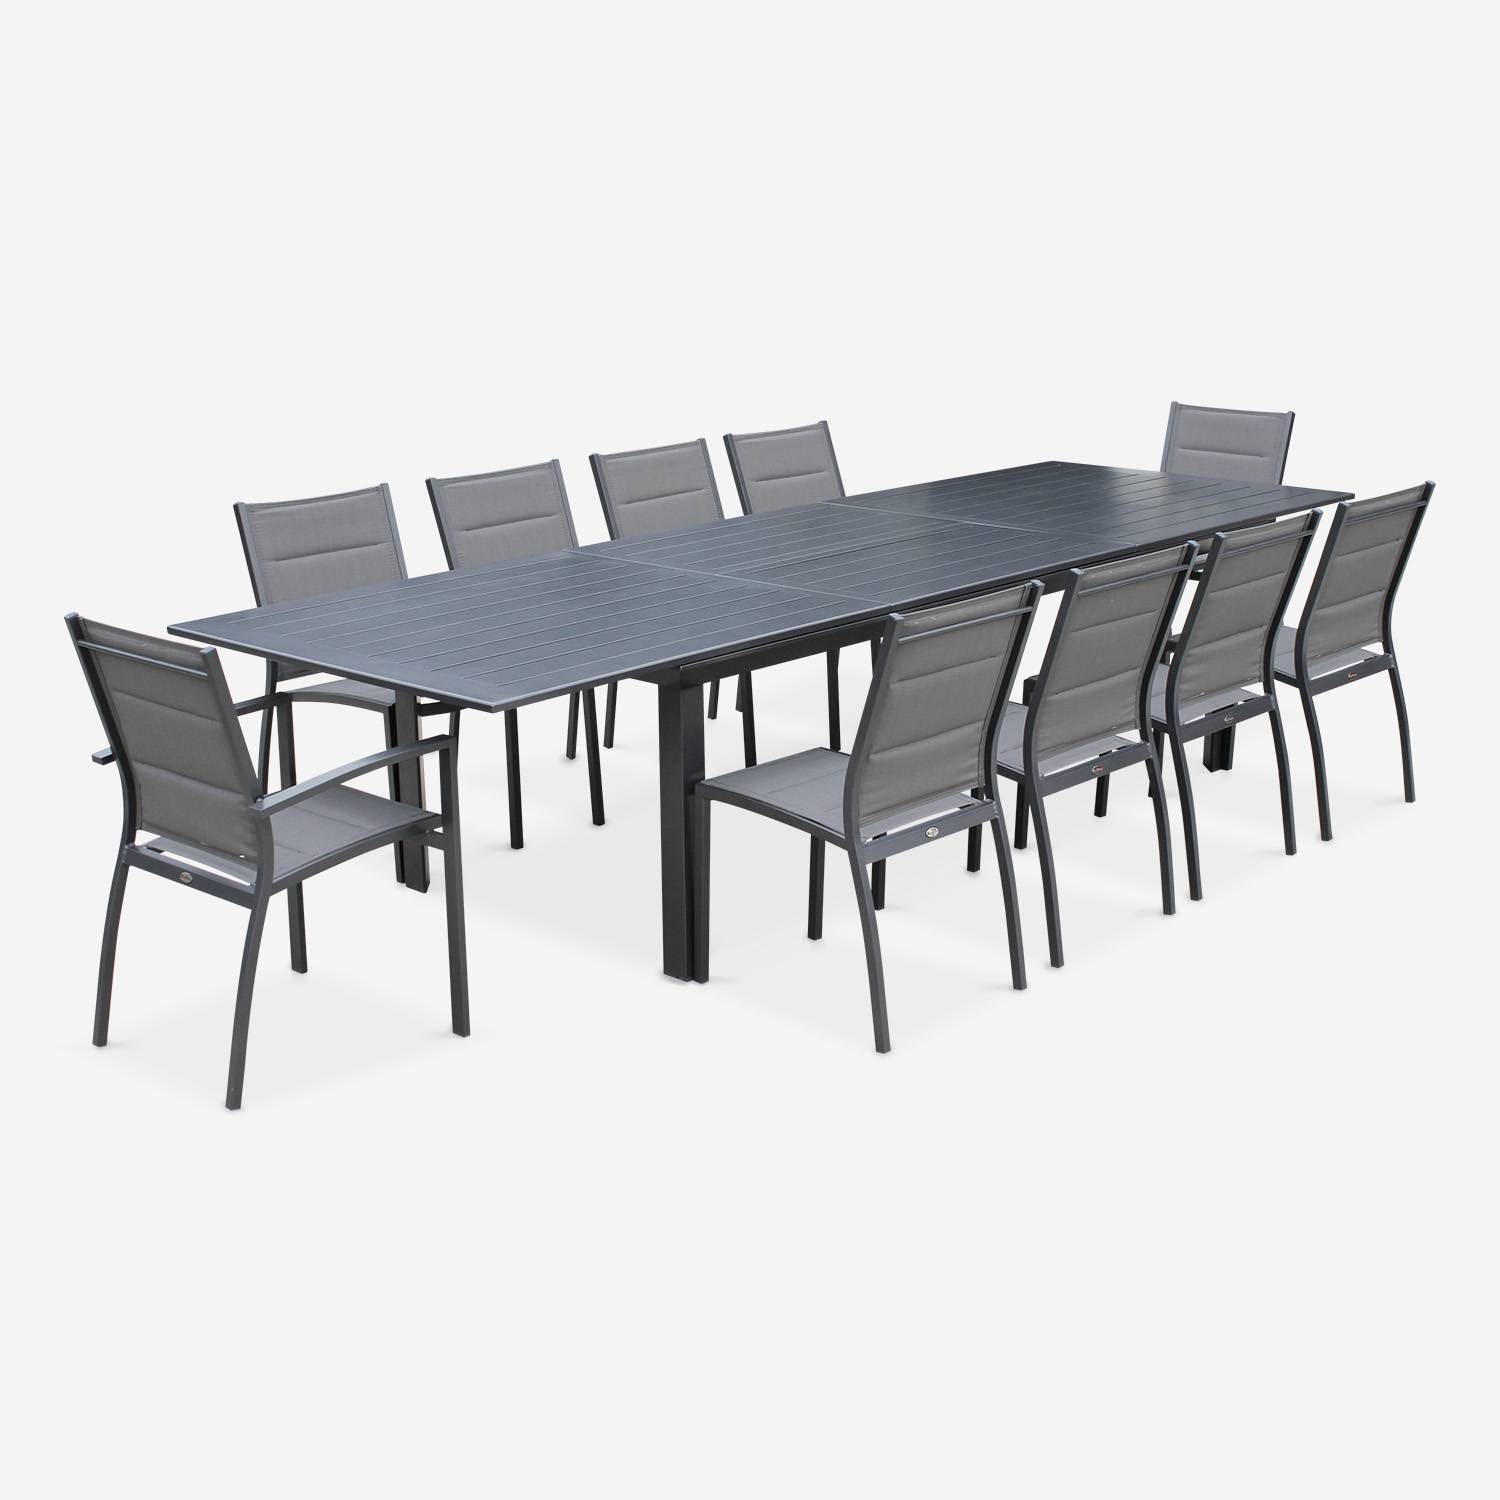 Tuinset Odenton, 1 uitschuifbare tafel, 2 fauteuils, 8 stoelen van aluminium en textileen Photo6